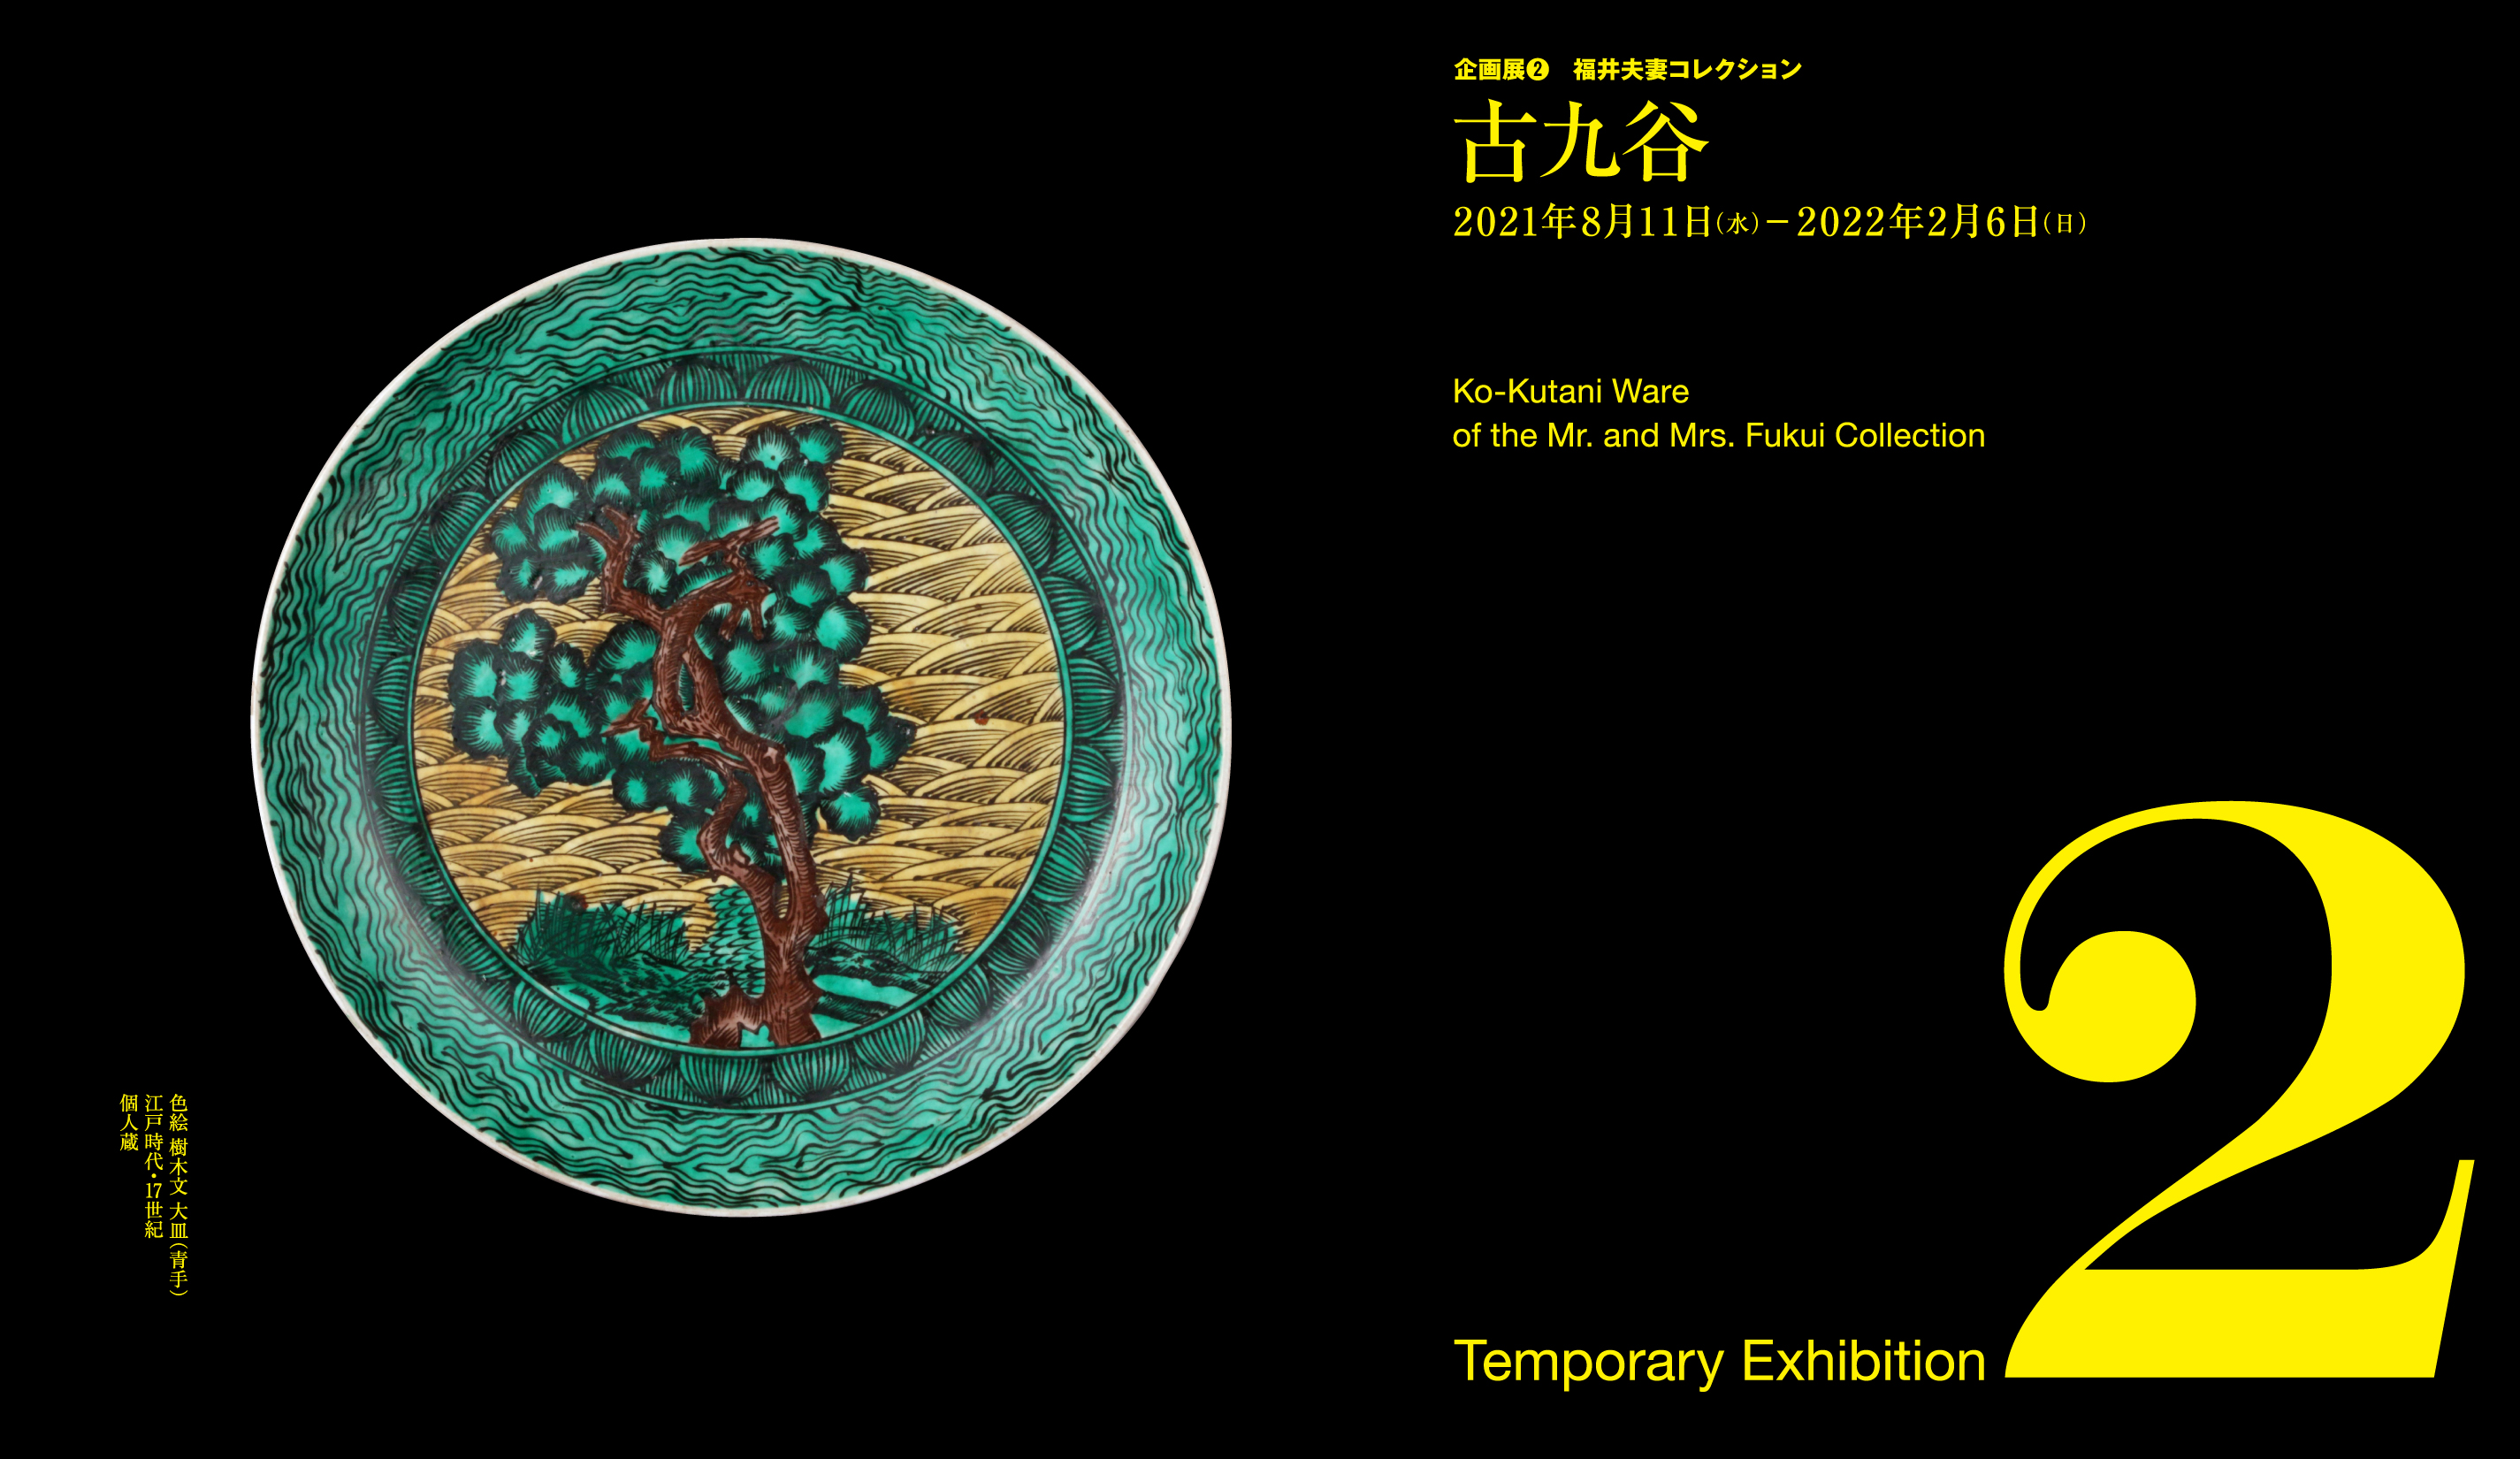 過去の展覧会 | 展覧会情報 |大阪市立東洋陶磁美術館